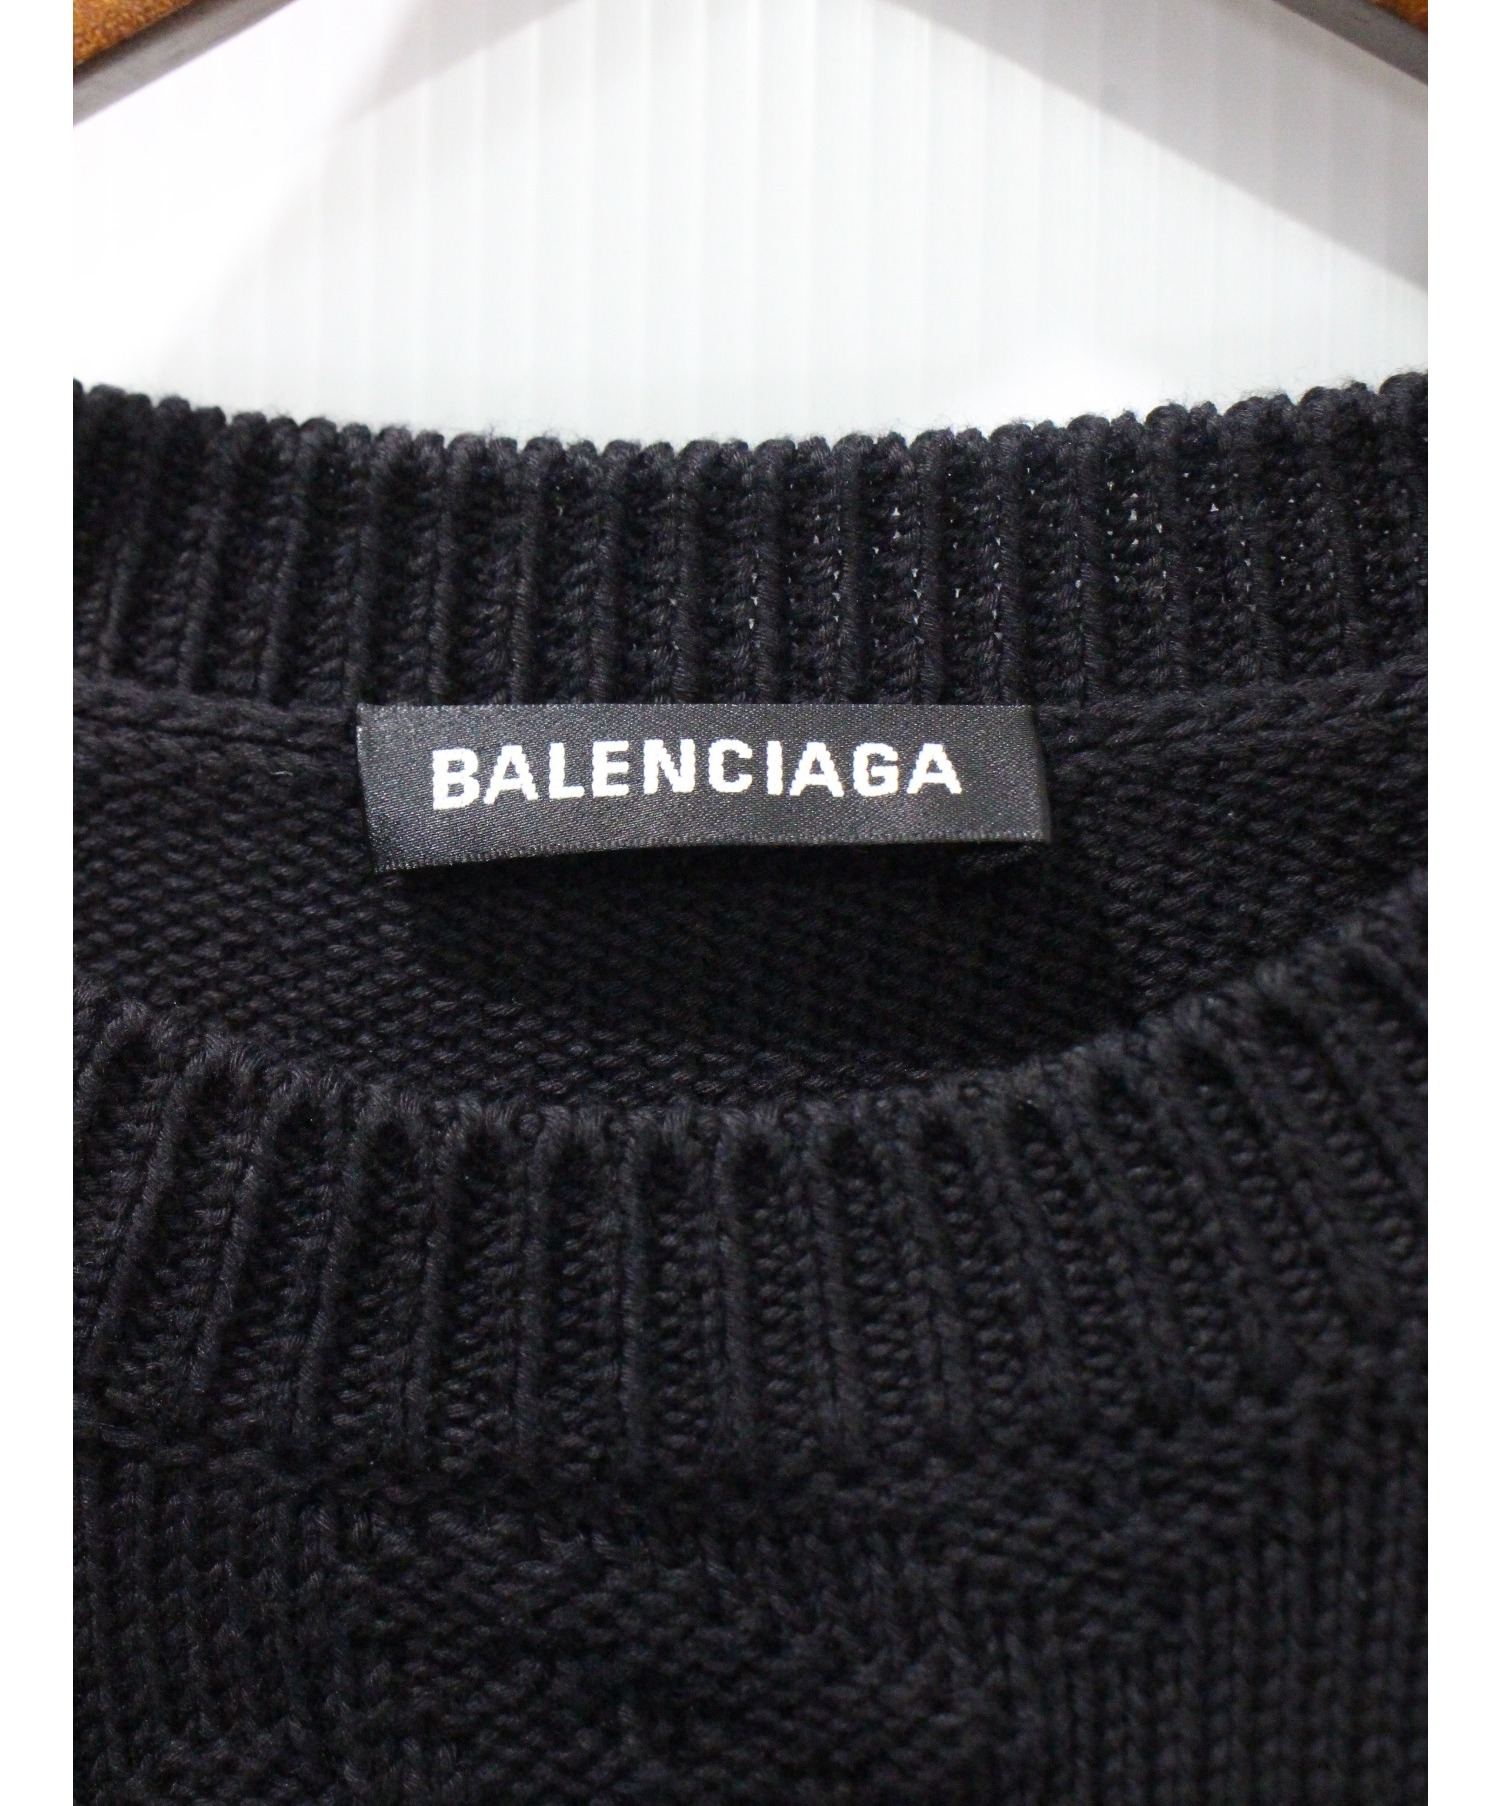 BALENCIAGA (バレンシアガ) ジャガードロゴクルーネックニット ブラック サイズ:M